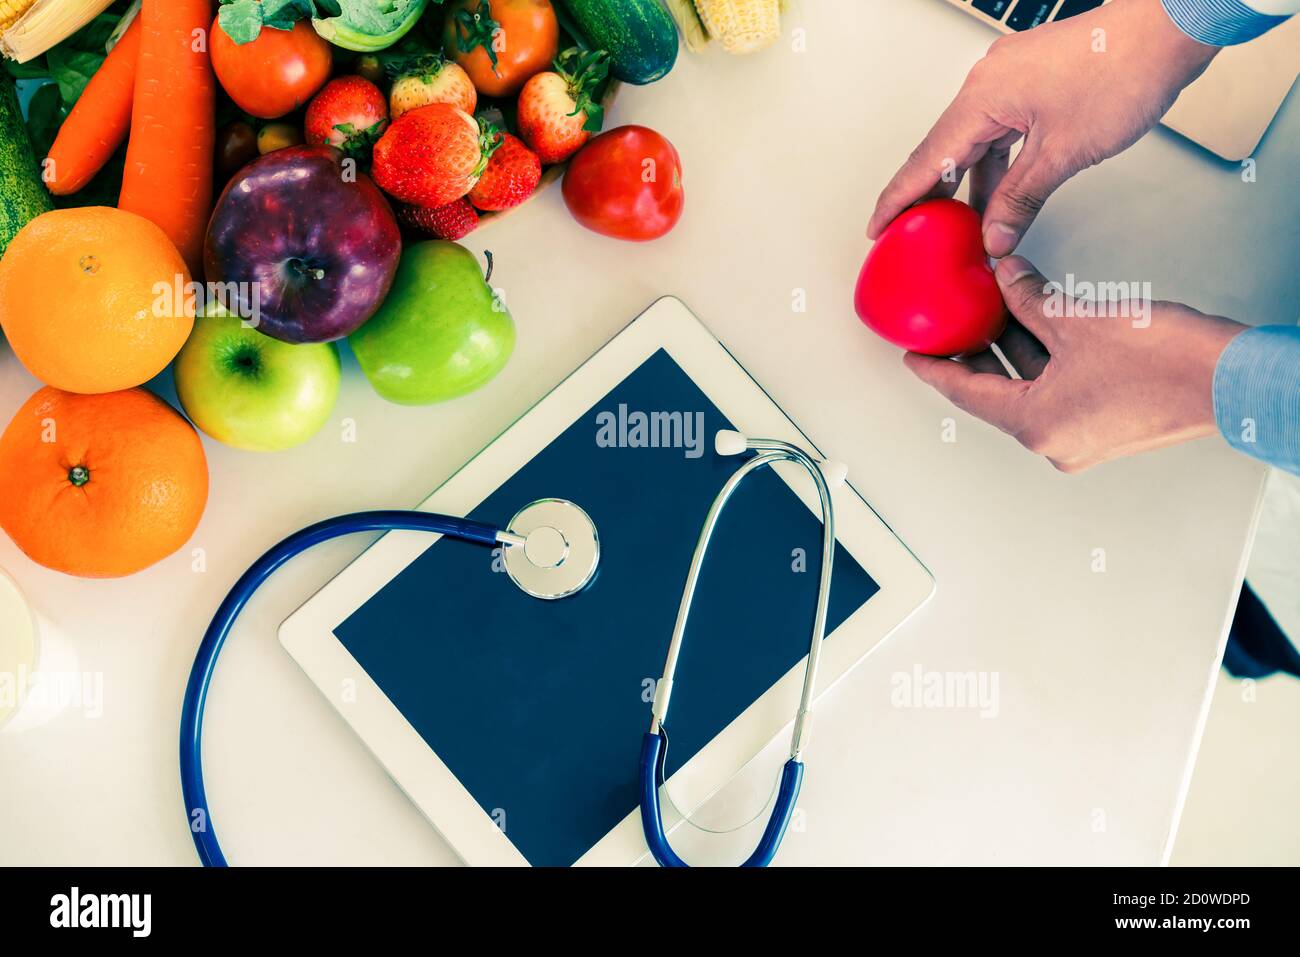 Alimentation des fruits et légumes pour le contrôle du cholestérol avec des mains nutritionnistes montrant la conscience et la prévention des maladies cardiaques. Une alimentation saine Banque D'Images